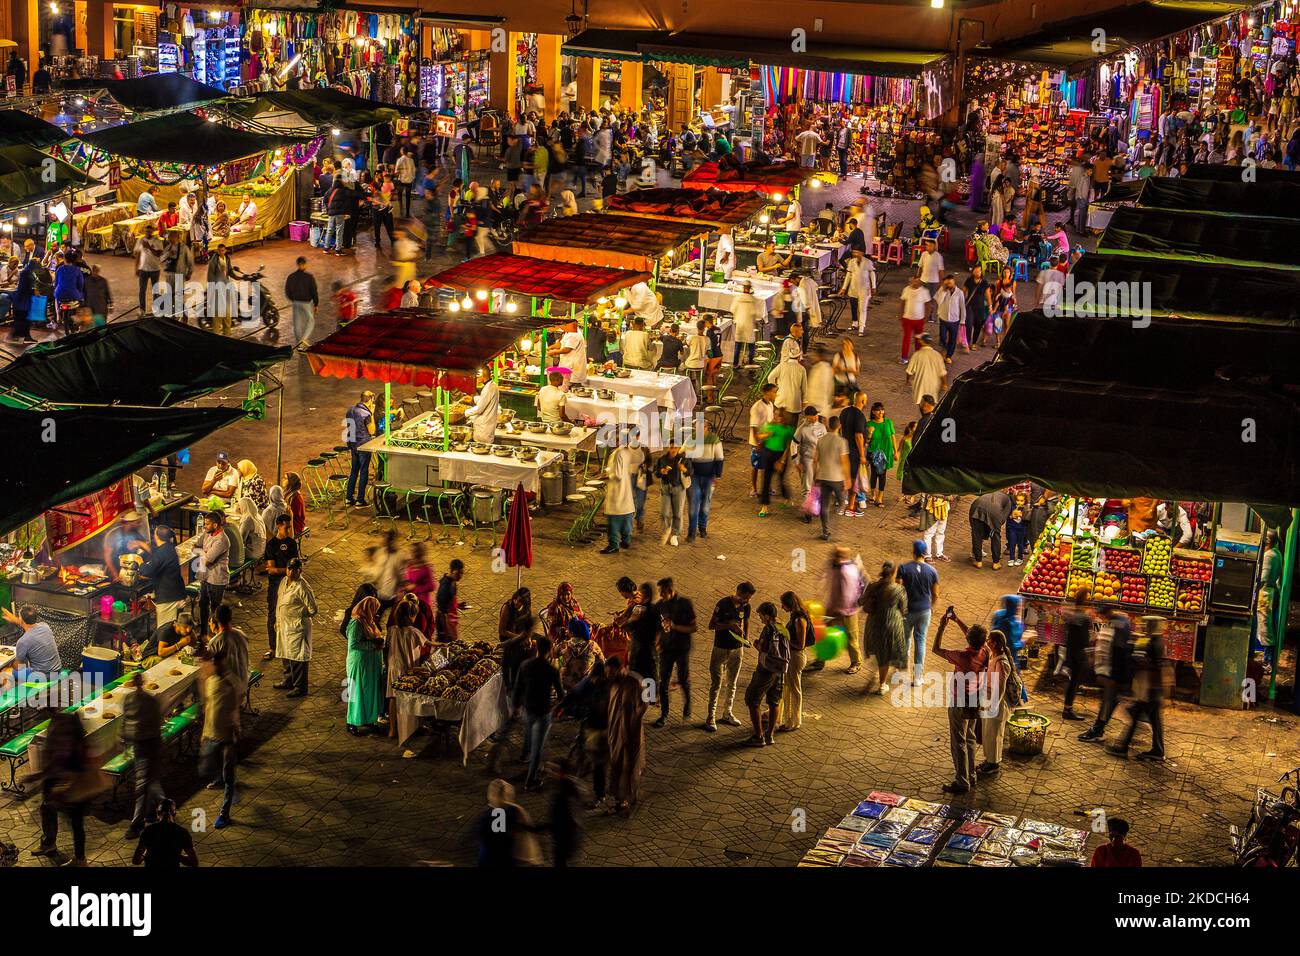 Marokko., Marrakesch - das Jemma al Fna / Jemaa el-Fnaa in der Nacht mit seinen Essensständen und Menschenmengen Stockfoto